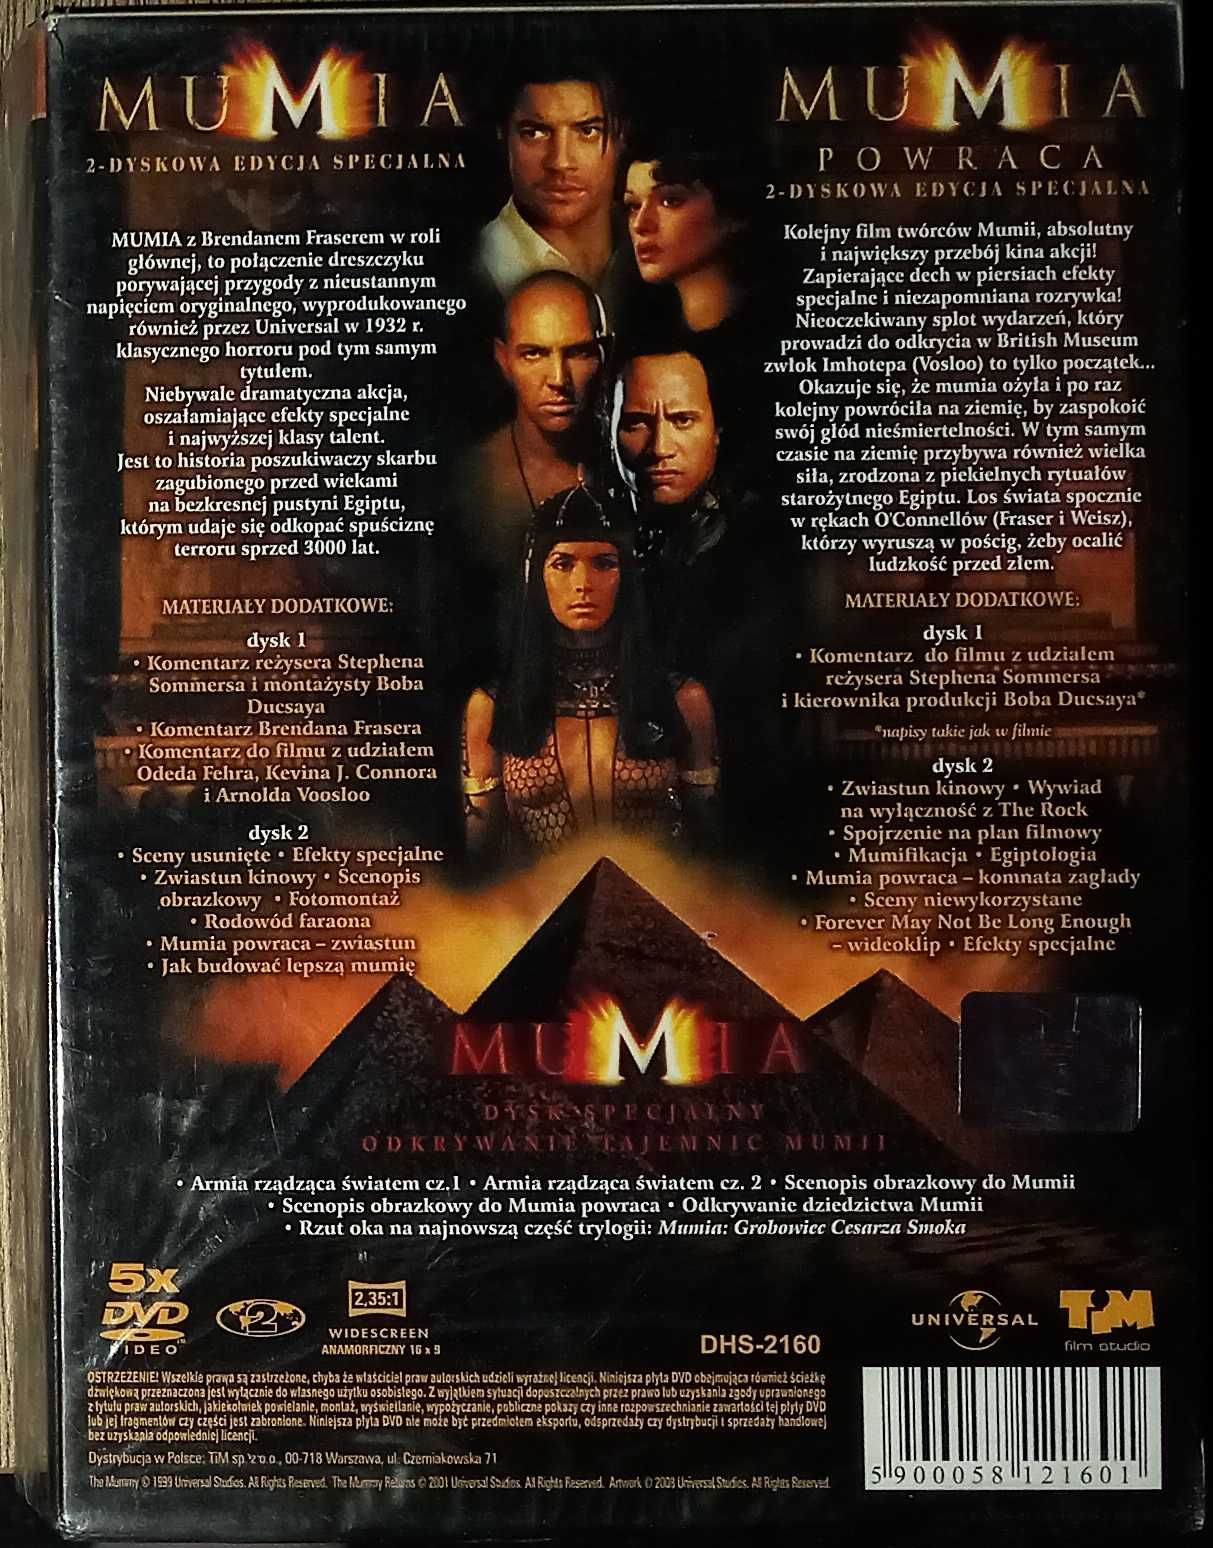 Mumia , mumia powraca dvd.